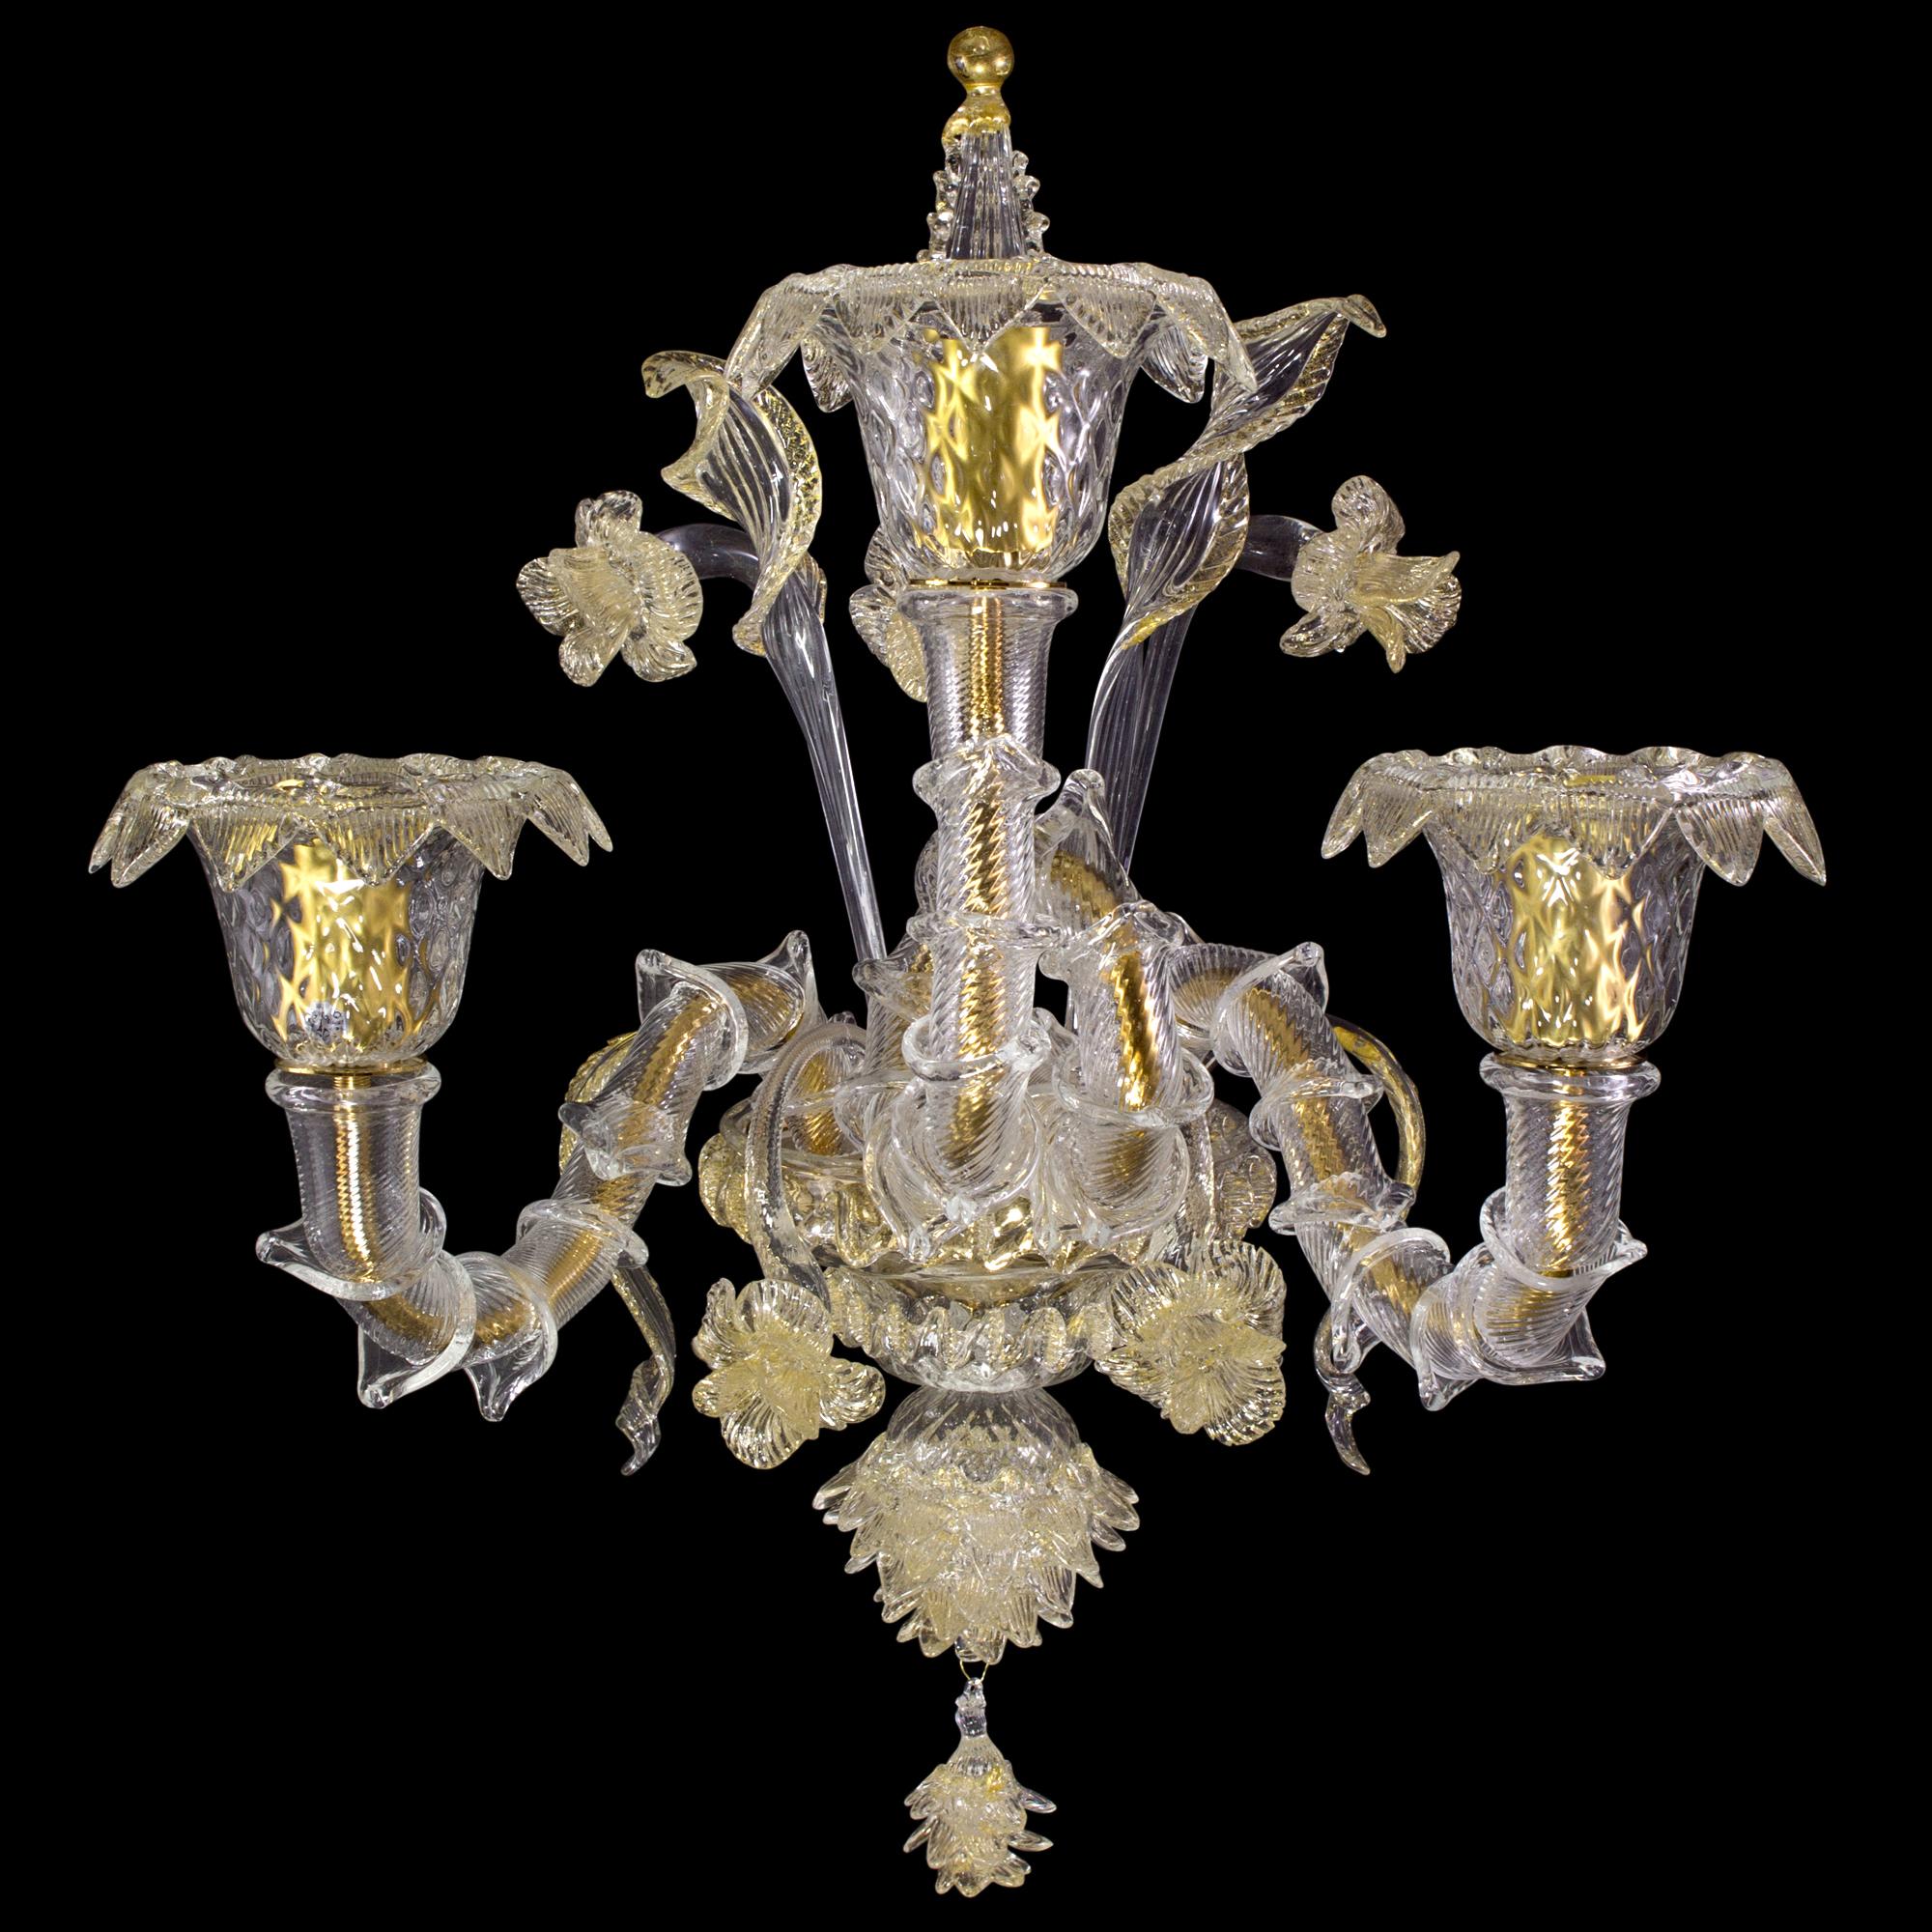 Artistics Rezzonico Sconce 3 lights crystal-gold Murano glass by MULTIFORME.
Le nom de cette collection évoque l'atmosphère magique et exotique des nuits arabes ; le lustre en verre soufflé Sherazade est l'un des objets de notre collection qui se